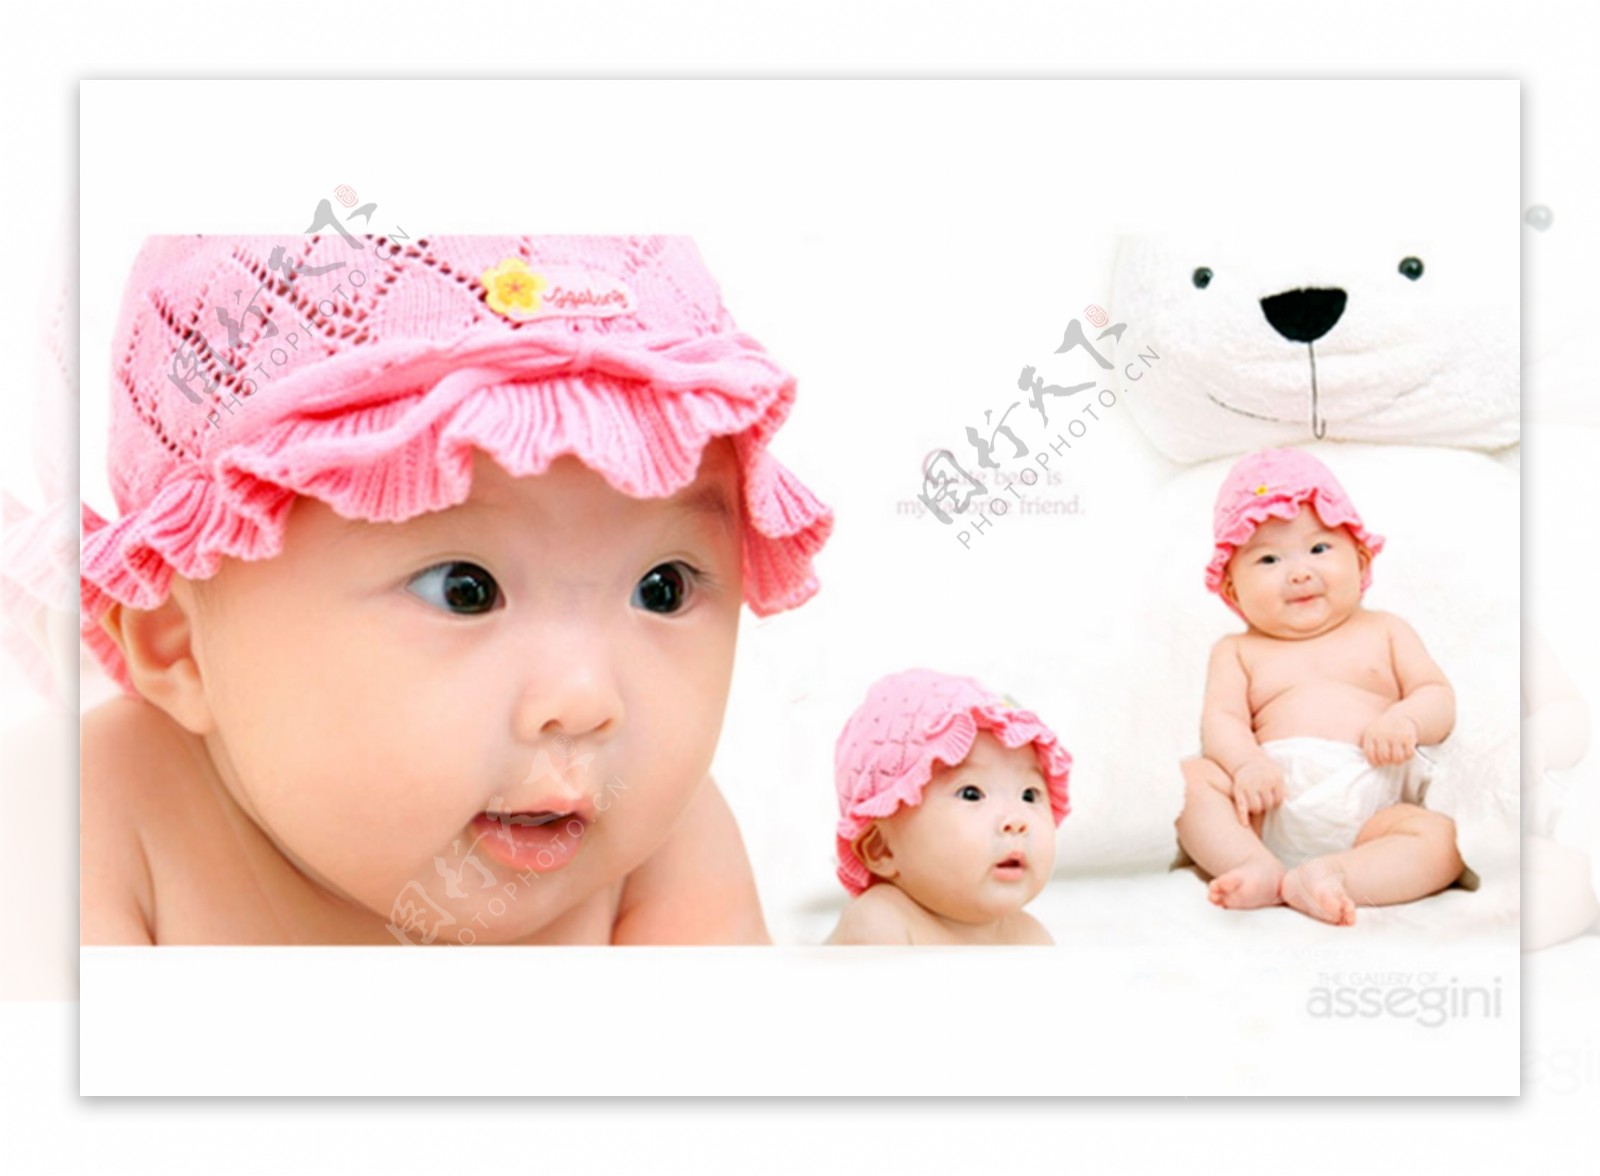 宝宝艺术照模板宝宝照片模板宝宝相册模板下载宝宝台历模板儿童相册模板